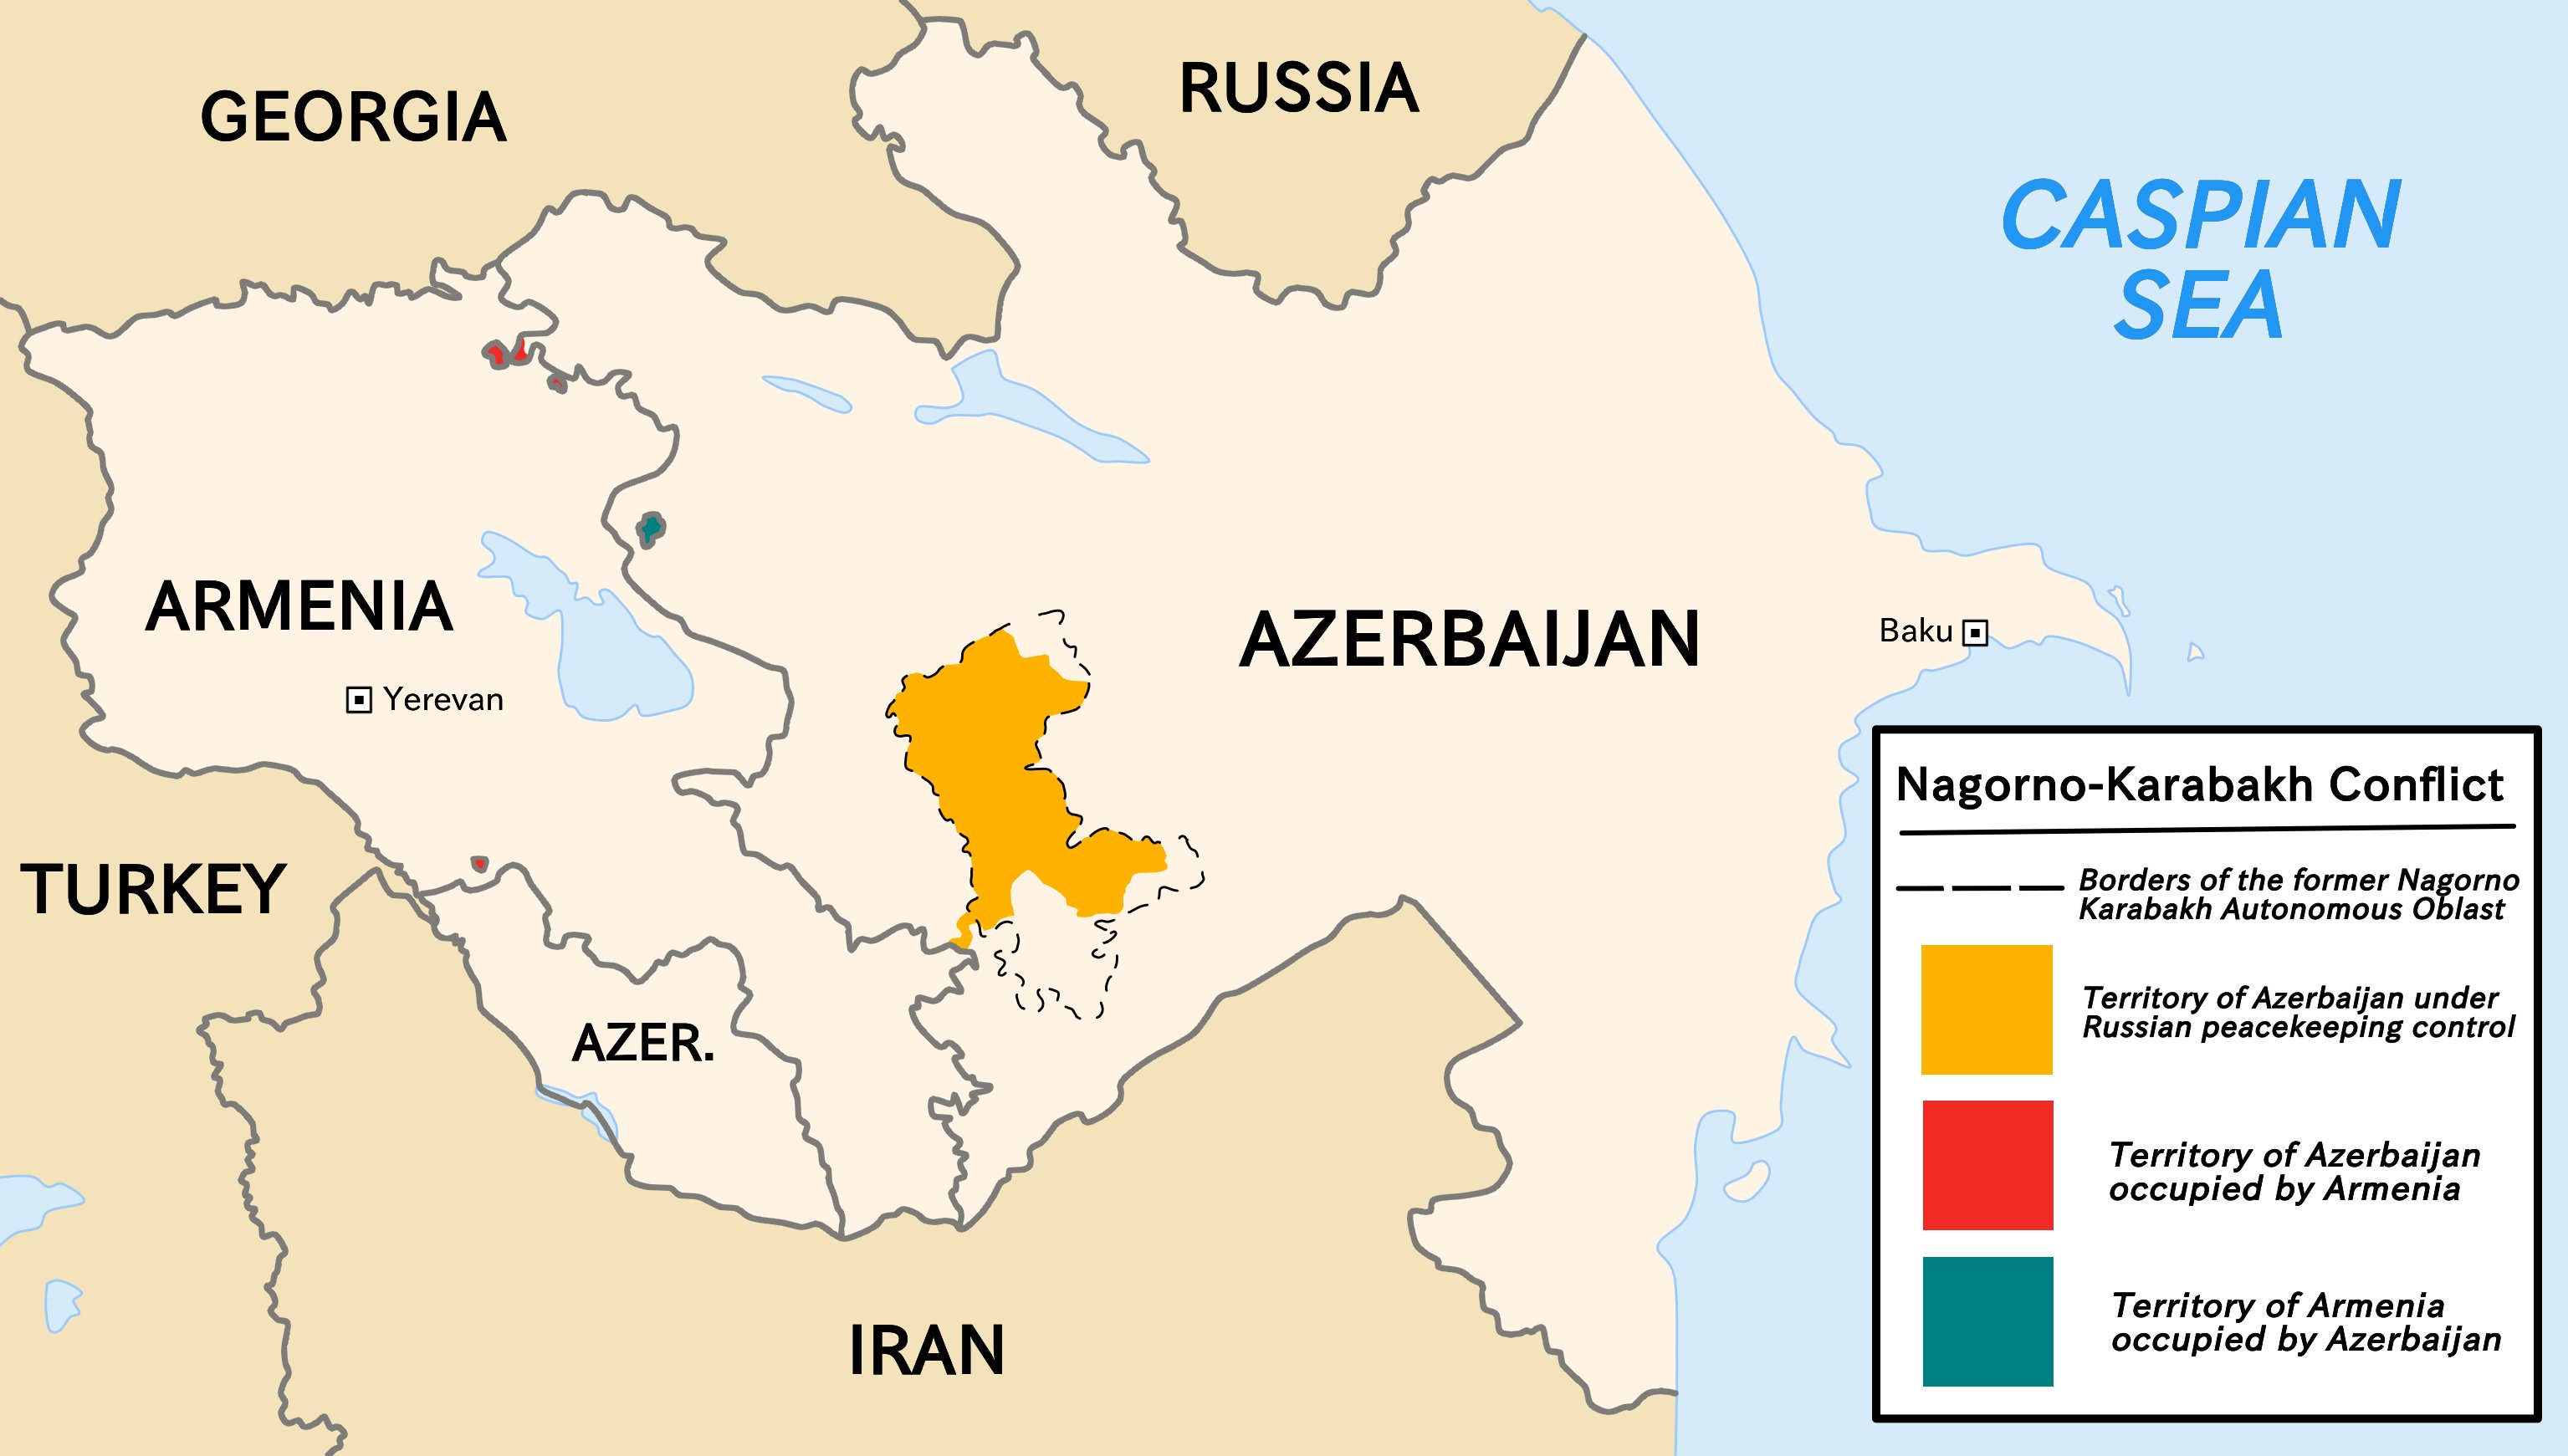 Nagorno-Karabakh_conflict.png (392 KB)